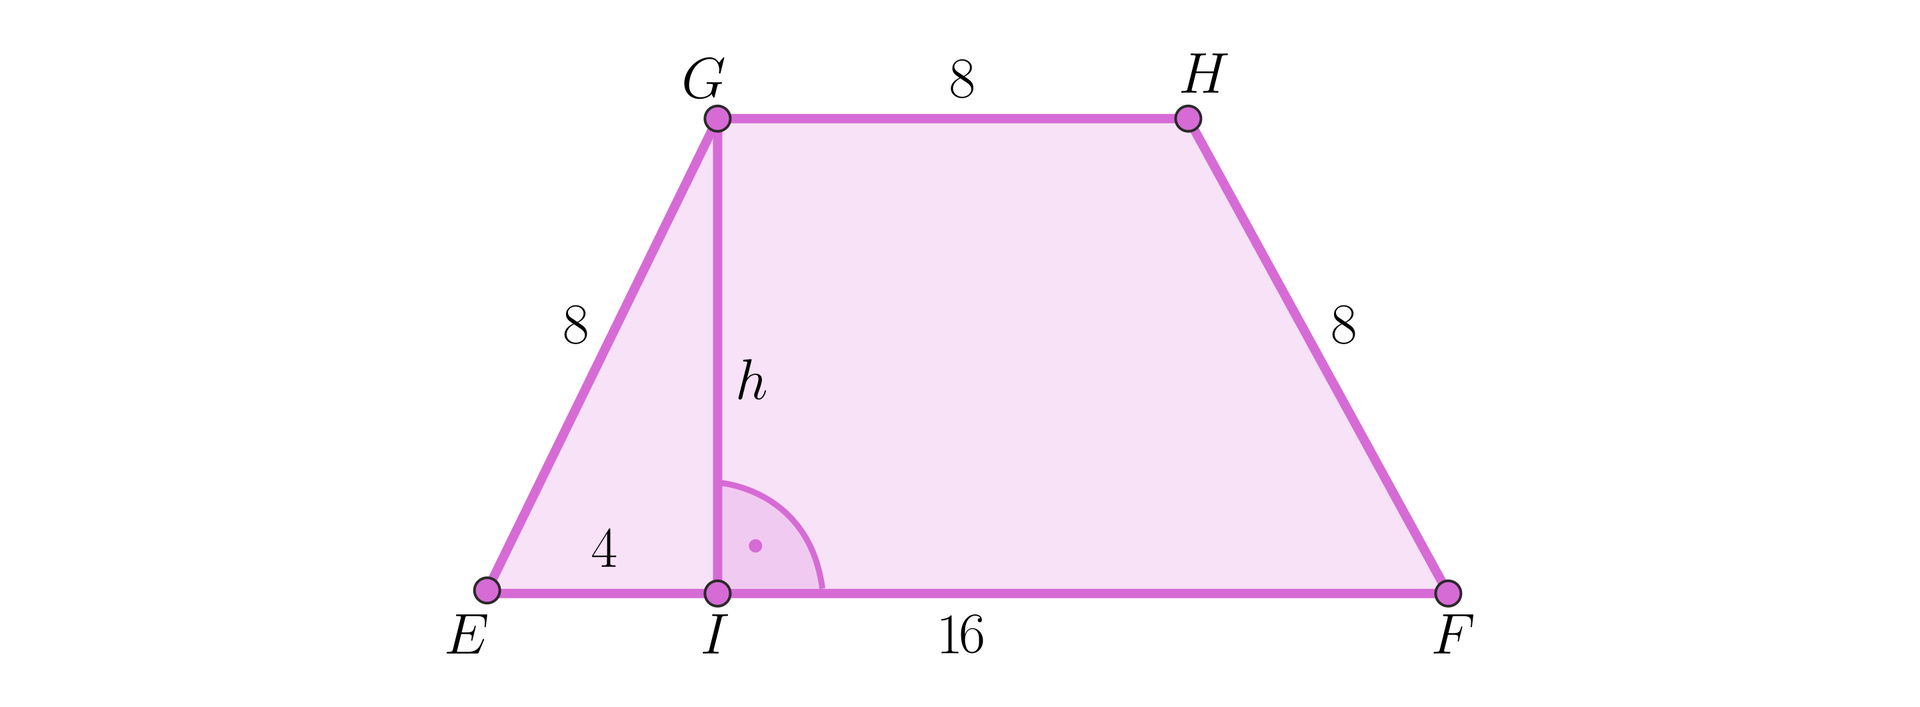 Na rysunku przedstawiono trapez EFHG o podstawie dolnej EF, która ma  długość 16. Ramiona trapezu mają długość 8 każde. Podstawa górna GH również  ma długość 8. Z wierzchołka G upuszczono wysokość h tak, że spada ona na punkt  I leżący na podstawie dolnej. W ten sposób otrzymujemy trójkąt prostokątny EIG, w którym  podstawa EI ma długość 4, przyprostokątna IG ma długość  h, a przeciwprostokątna GE ma długość 8.